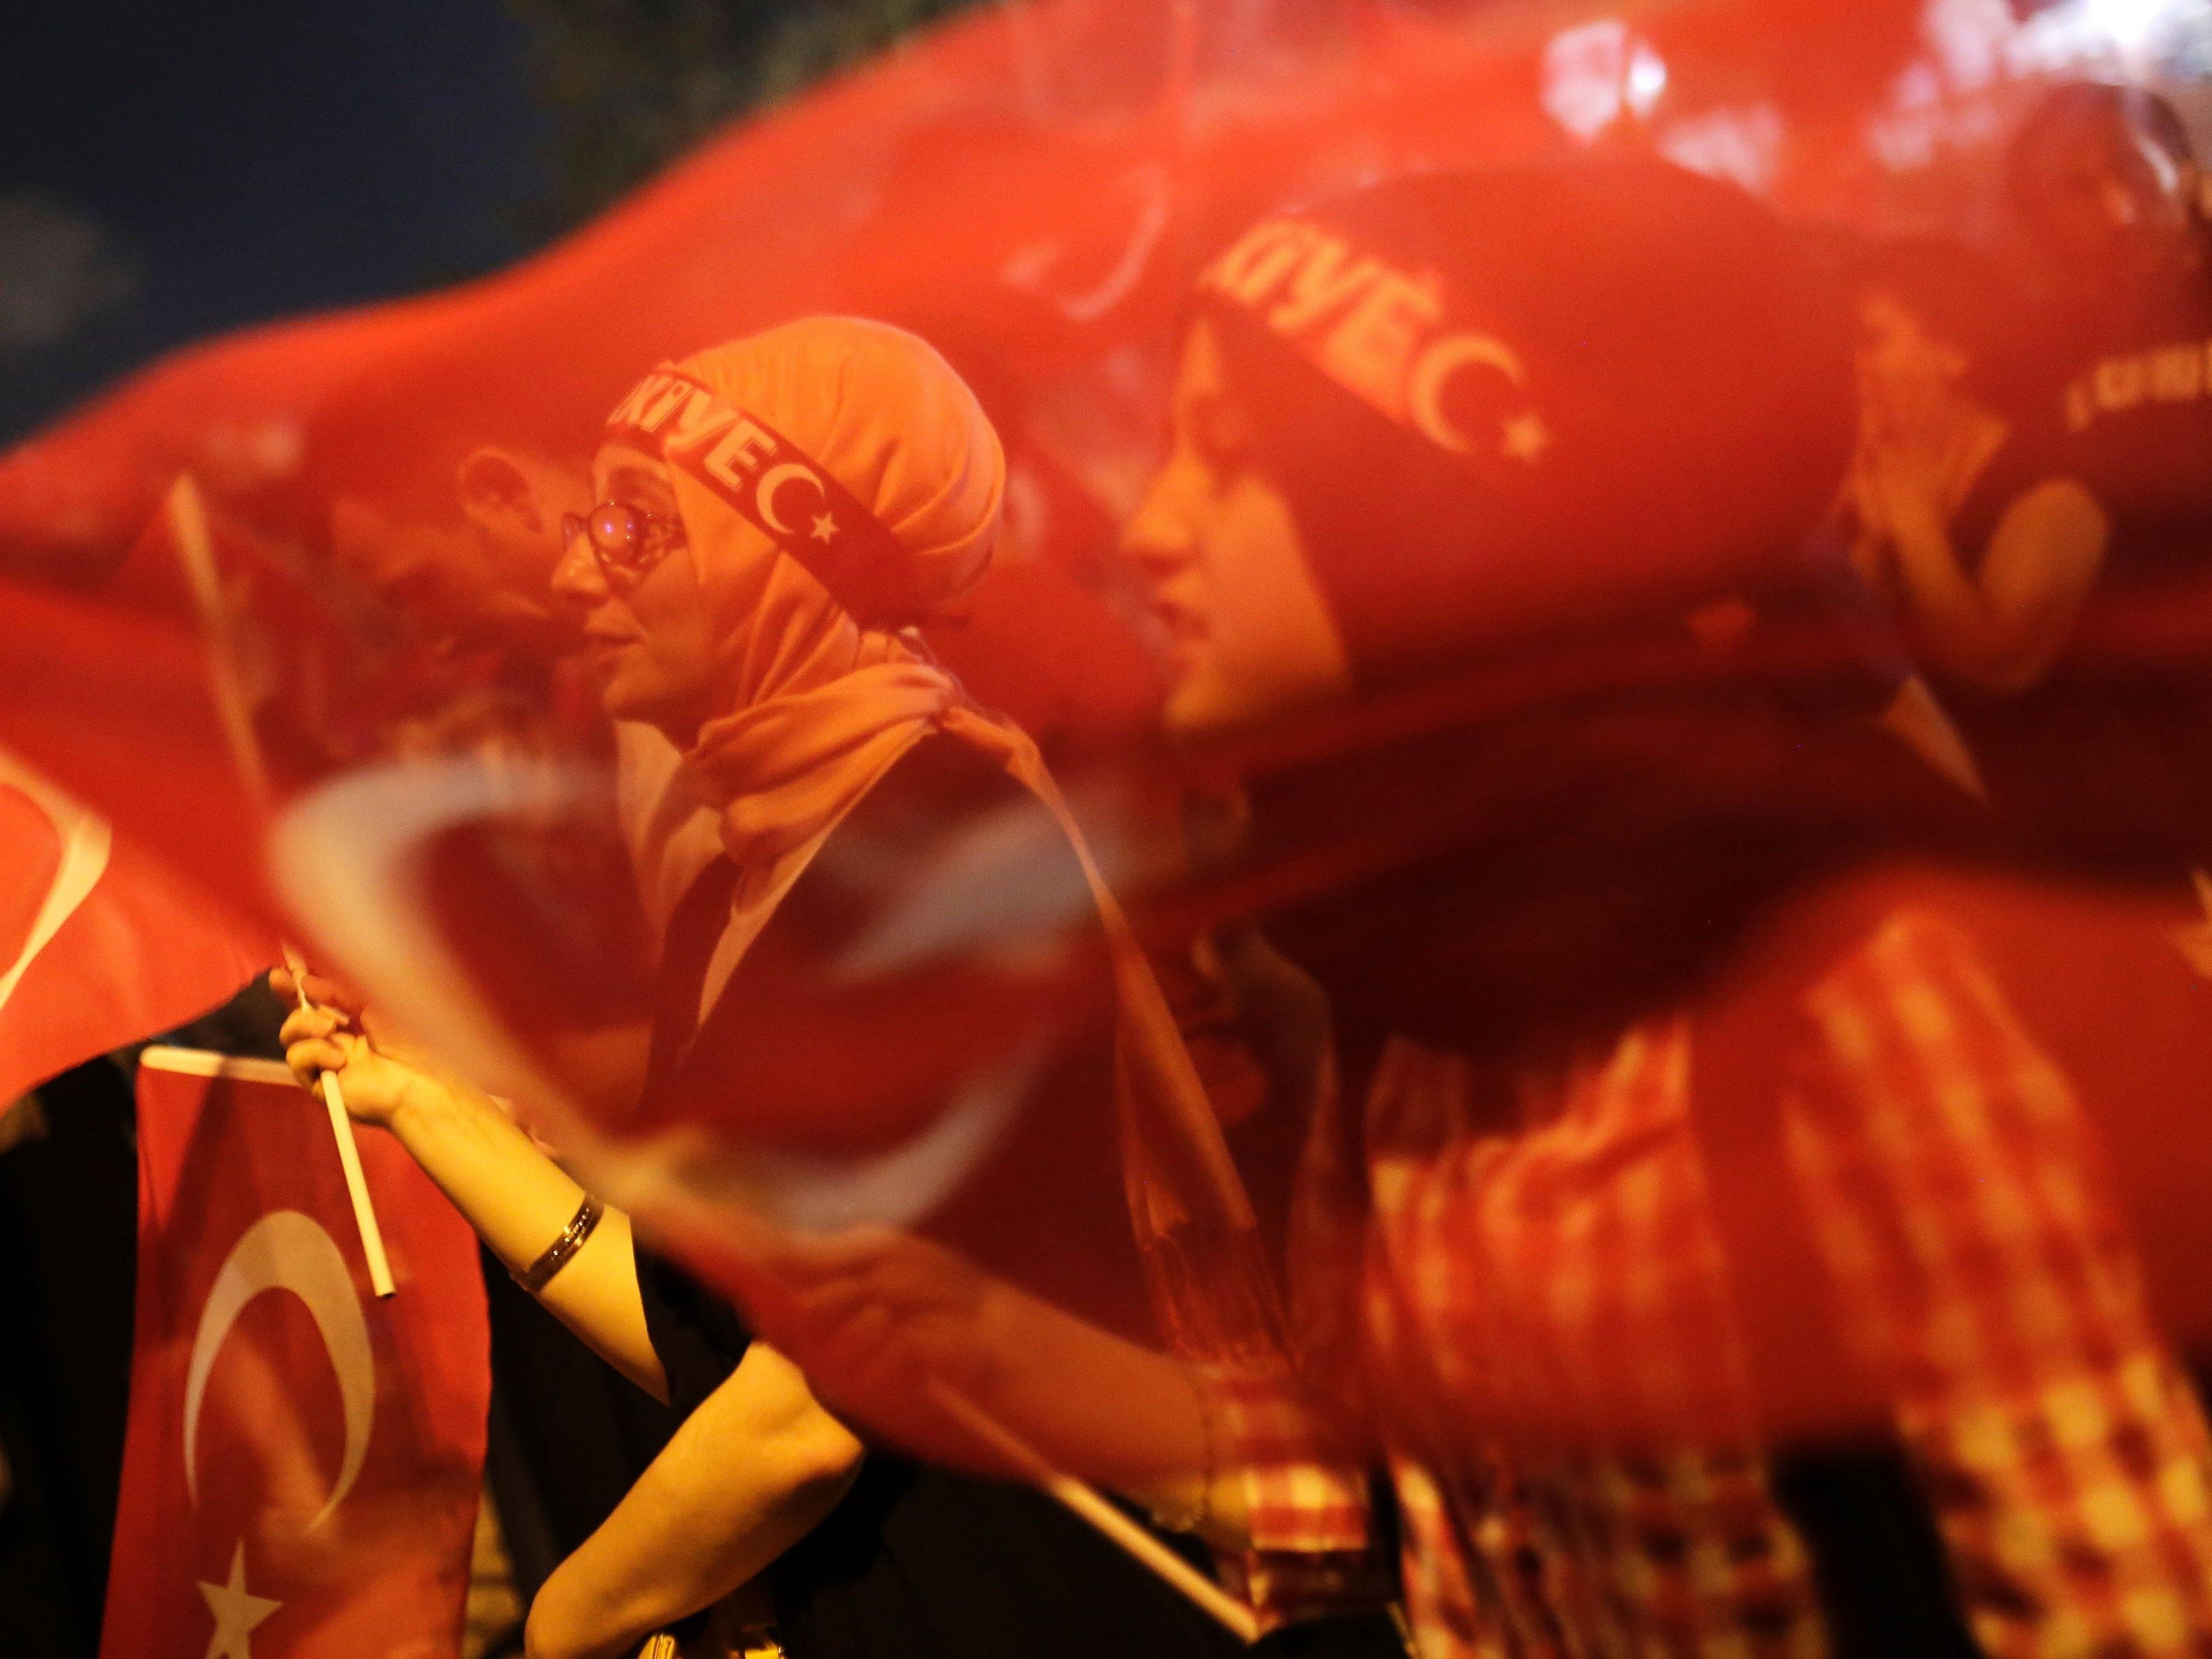 Die österreichische Rechtsanwaltskammer kritisiert das Vorgehen in der Türkei